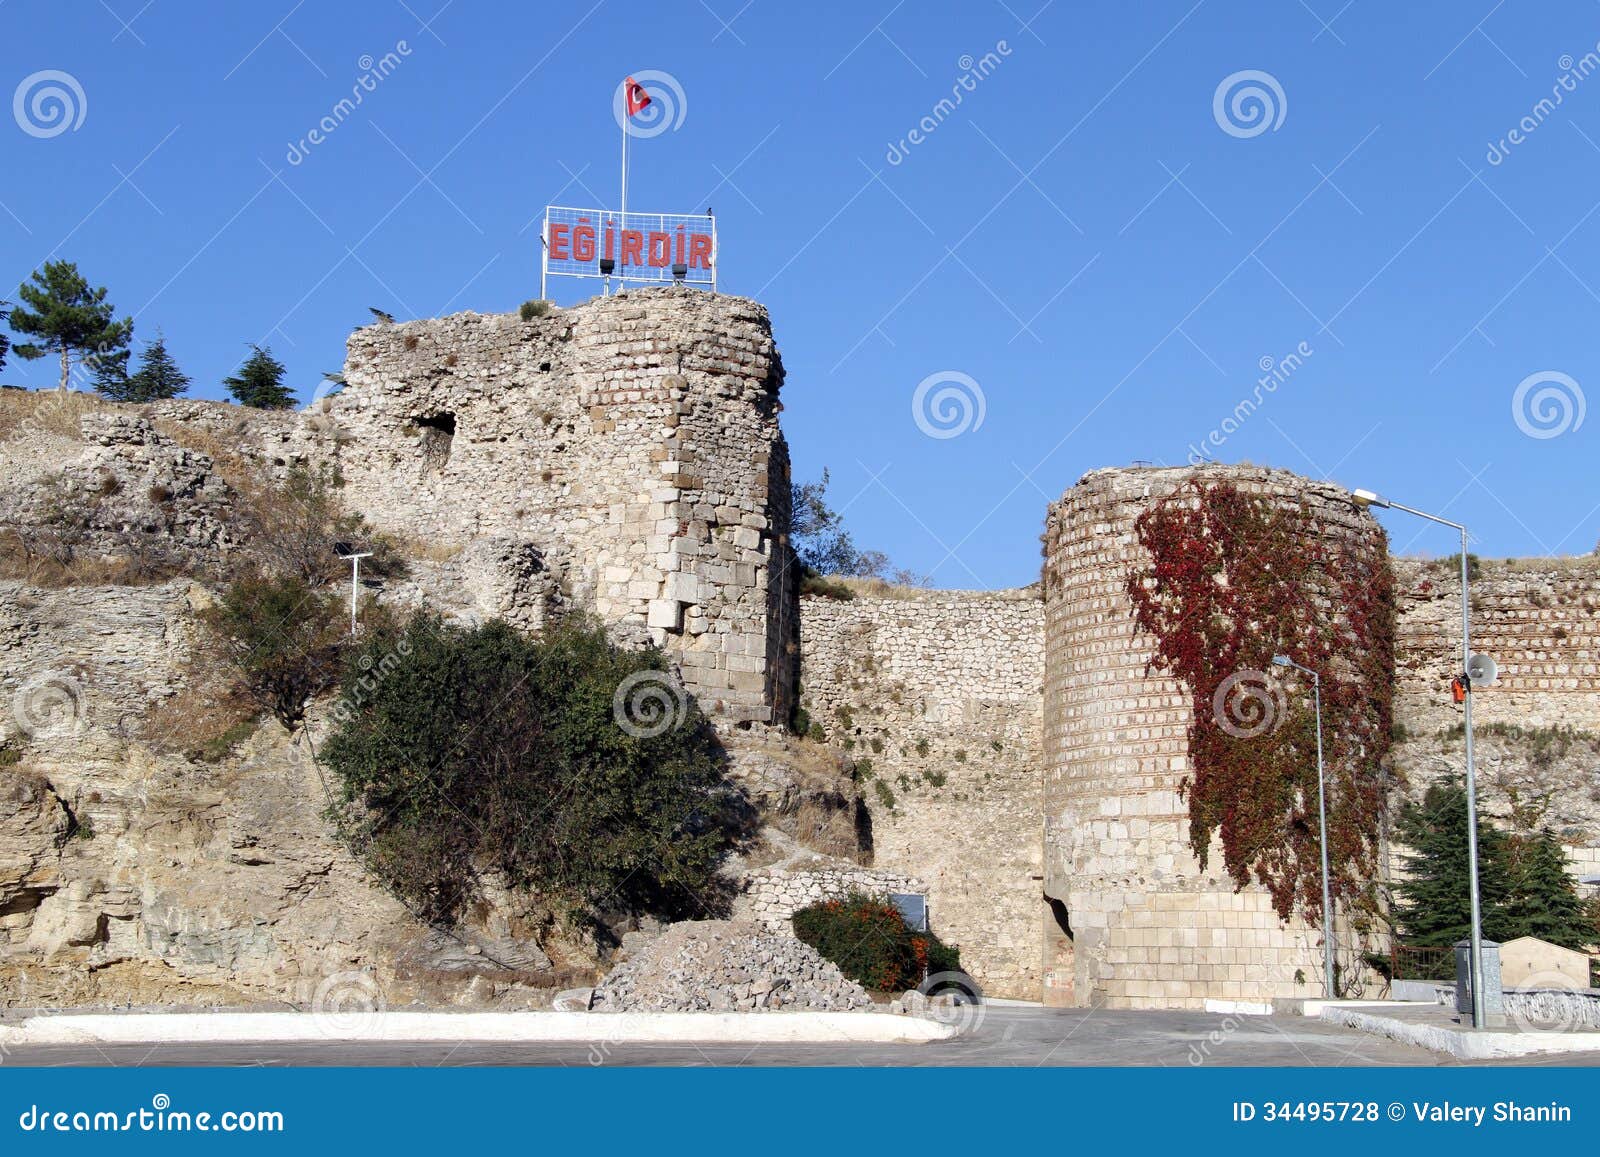 Ruiny forteca. Ruiny stary rzymski forteca w Egirdir, Turcja